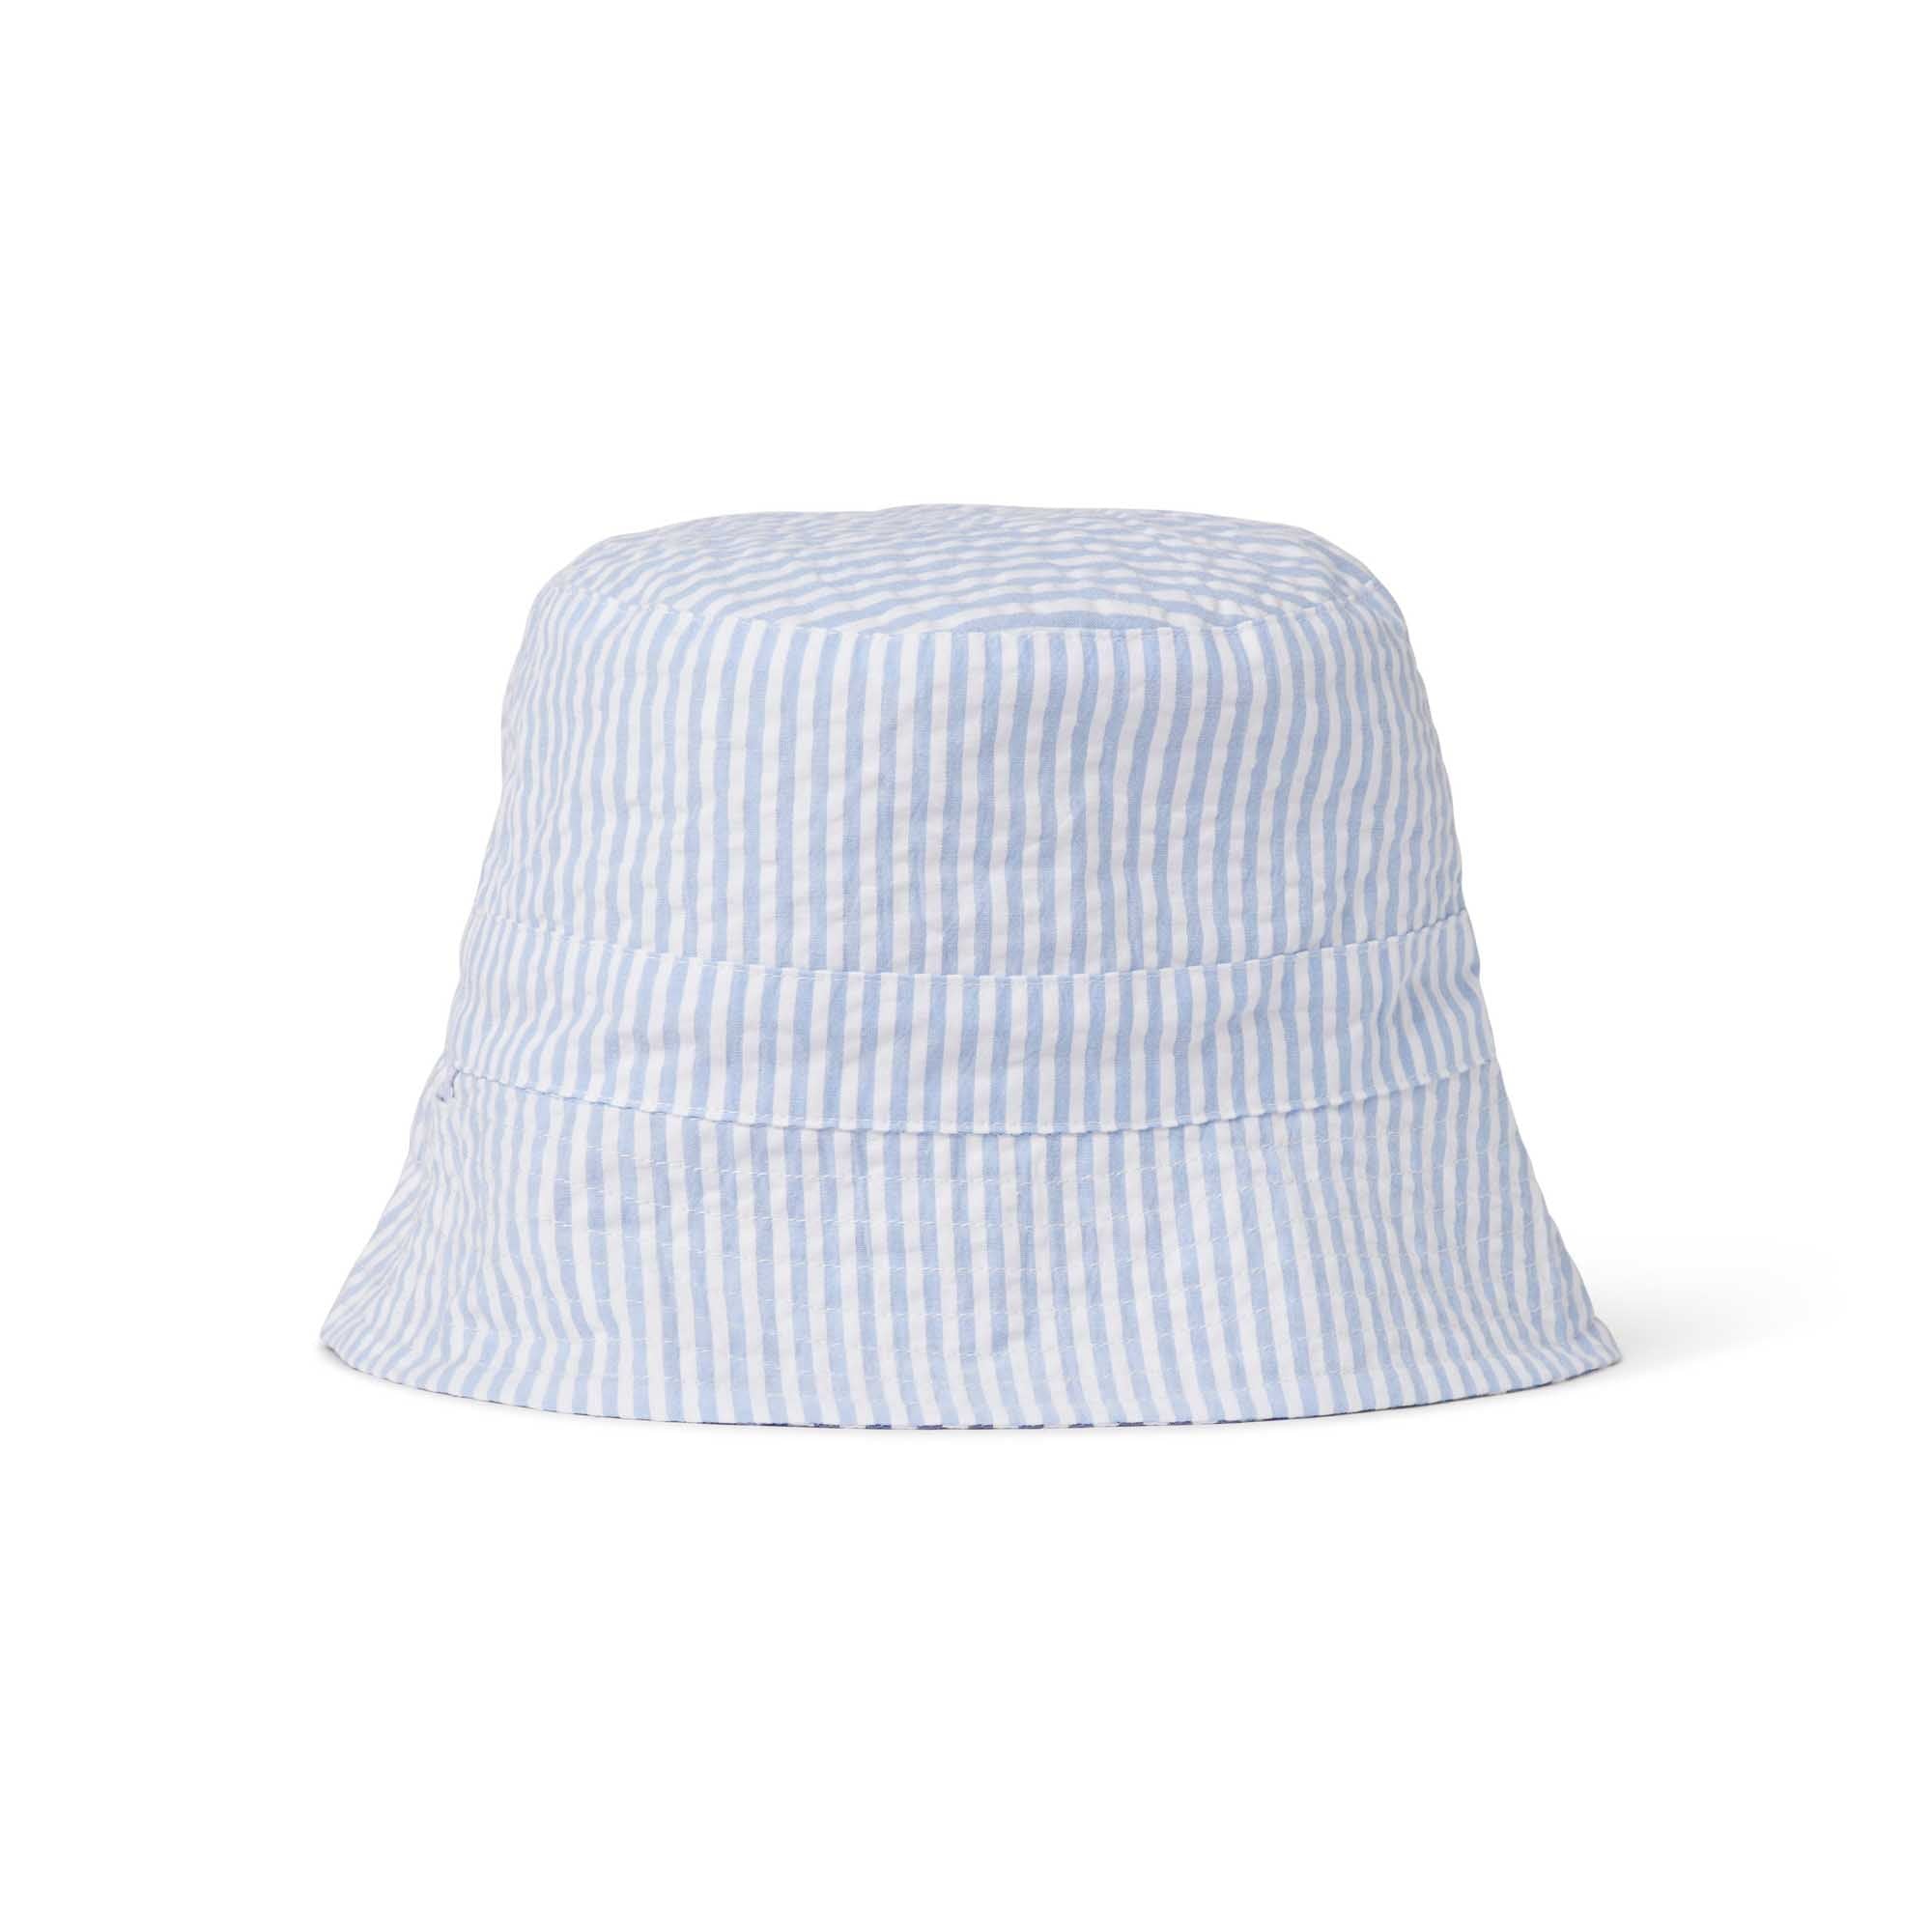 Blake Baby Reversible Bucket Hat, Vista Blue Seersucker